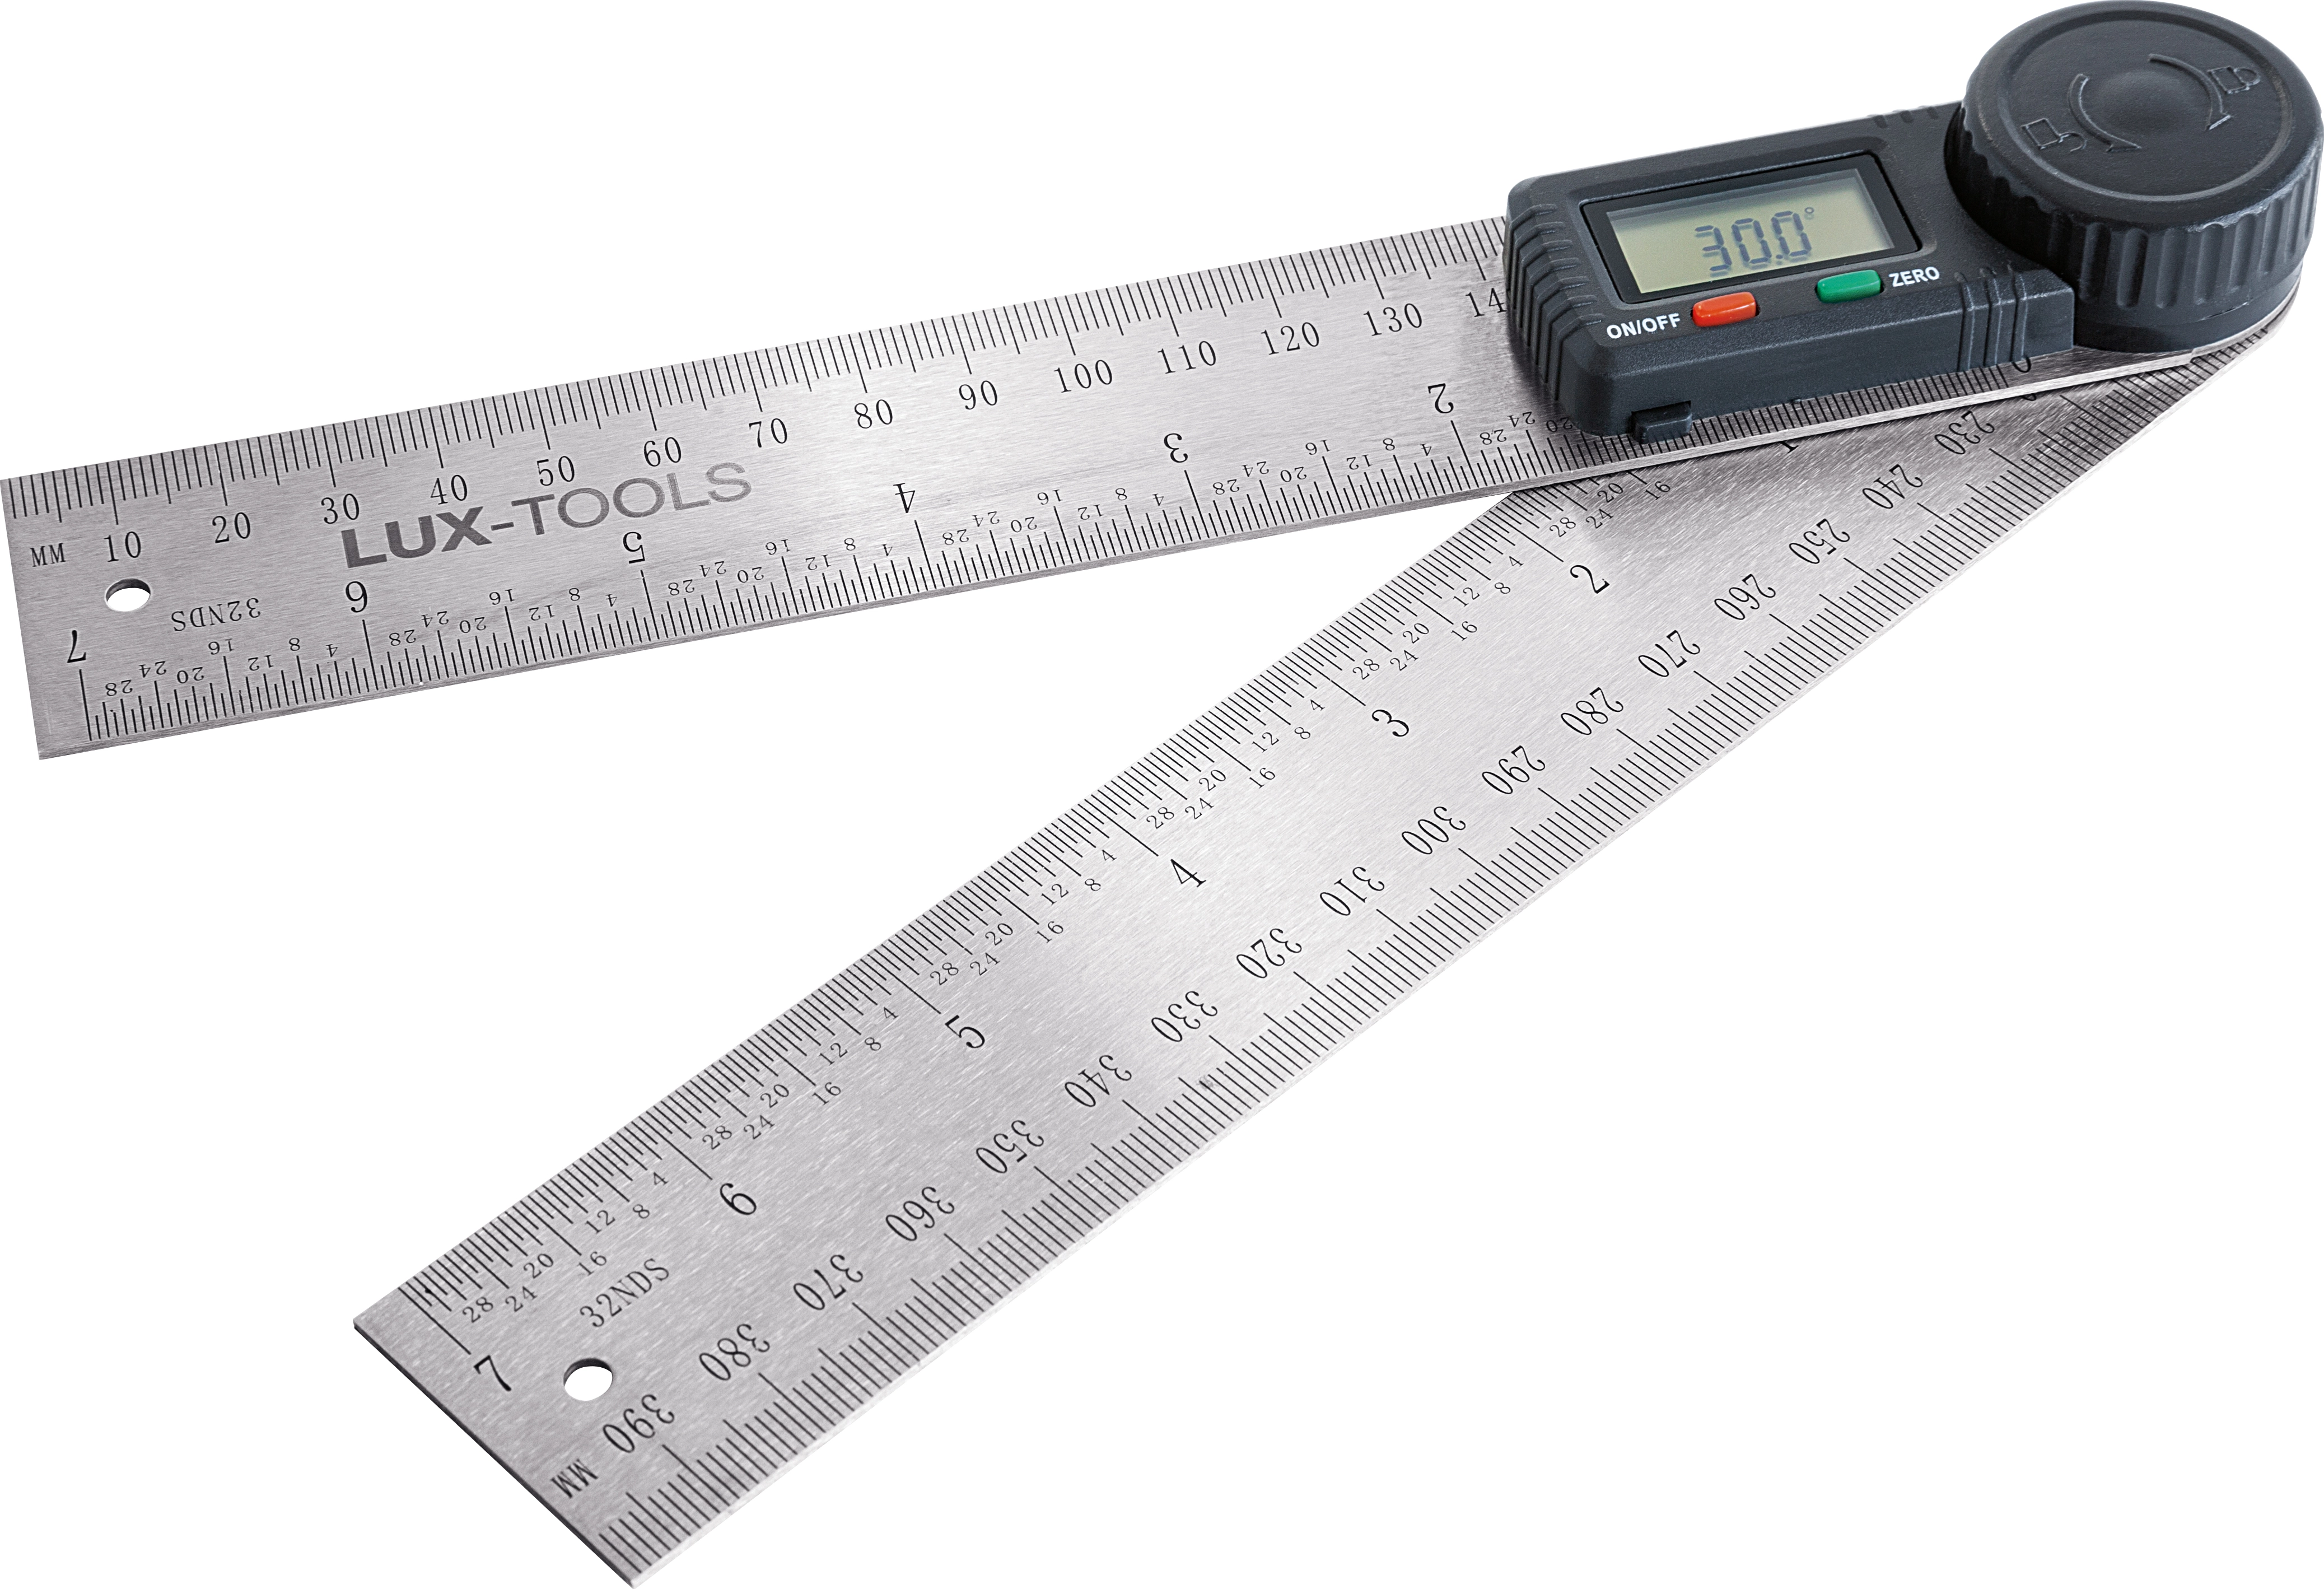 Goniometro digitale LUX 40 cm